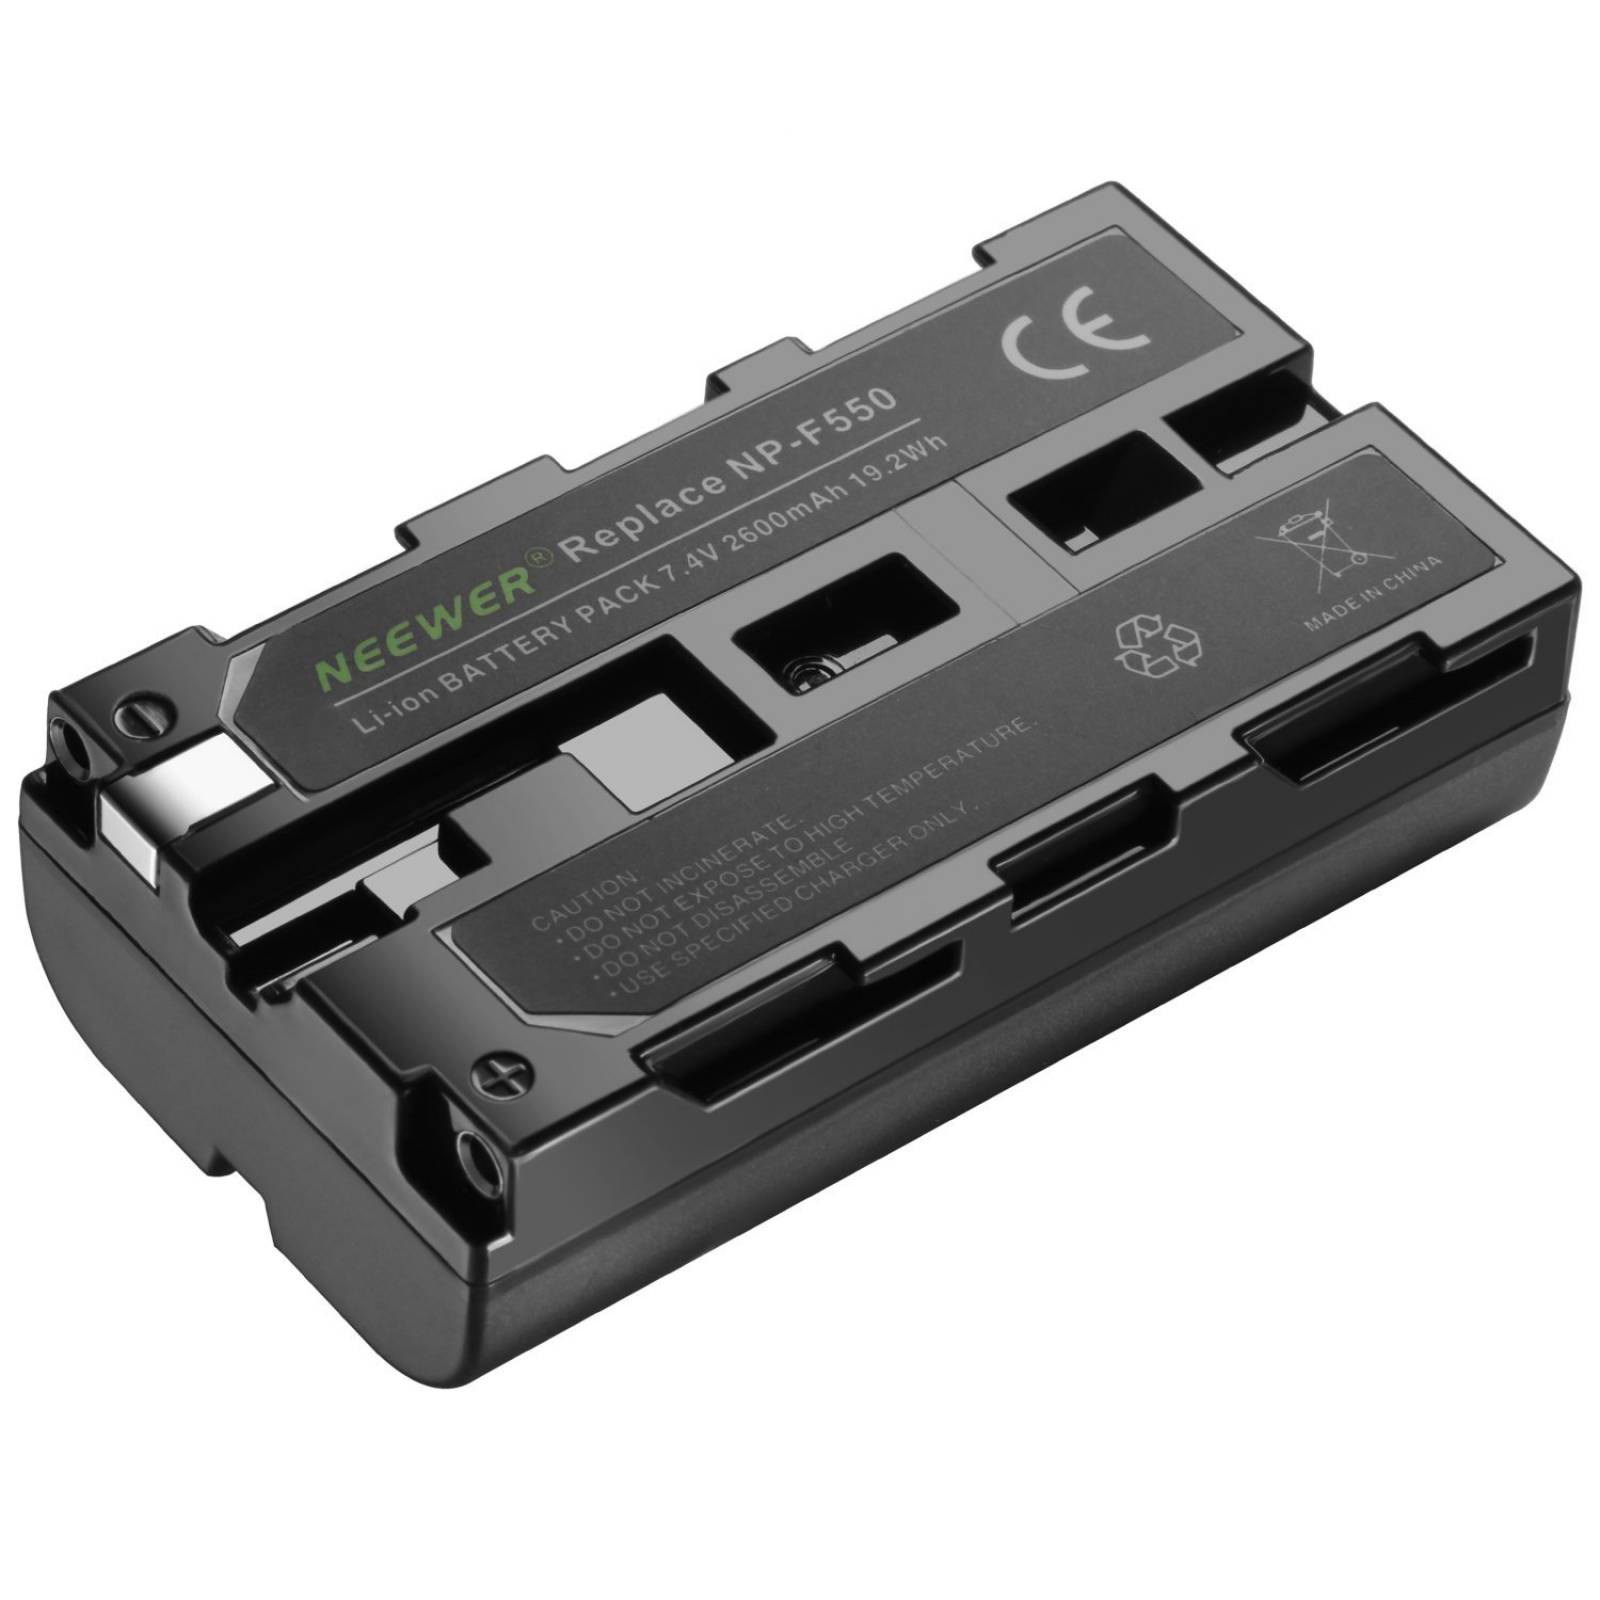 Cargador Neewer Np-f550 Para Sony Np-f550/570 2 Baterías